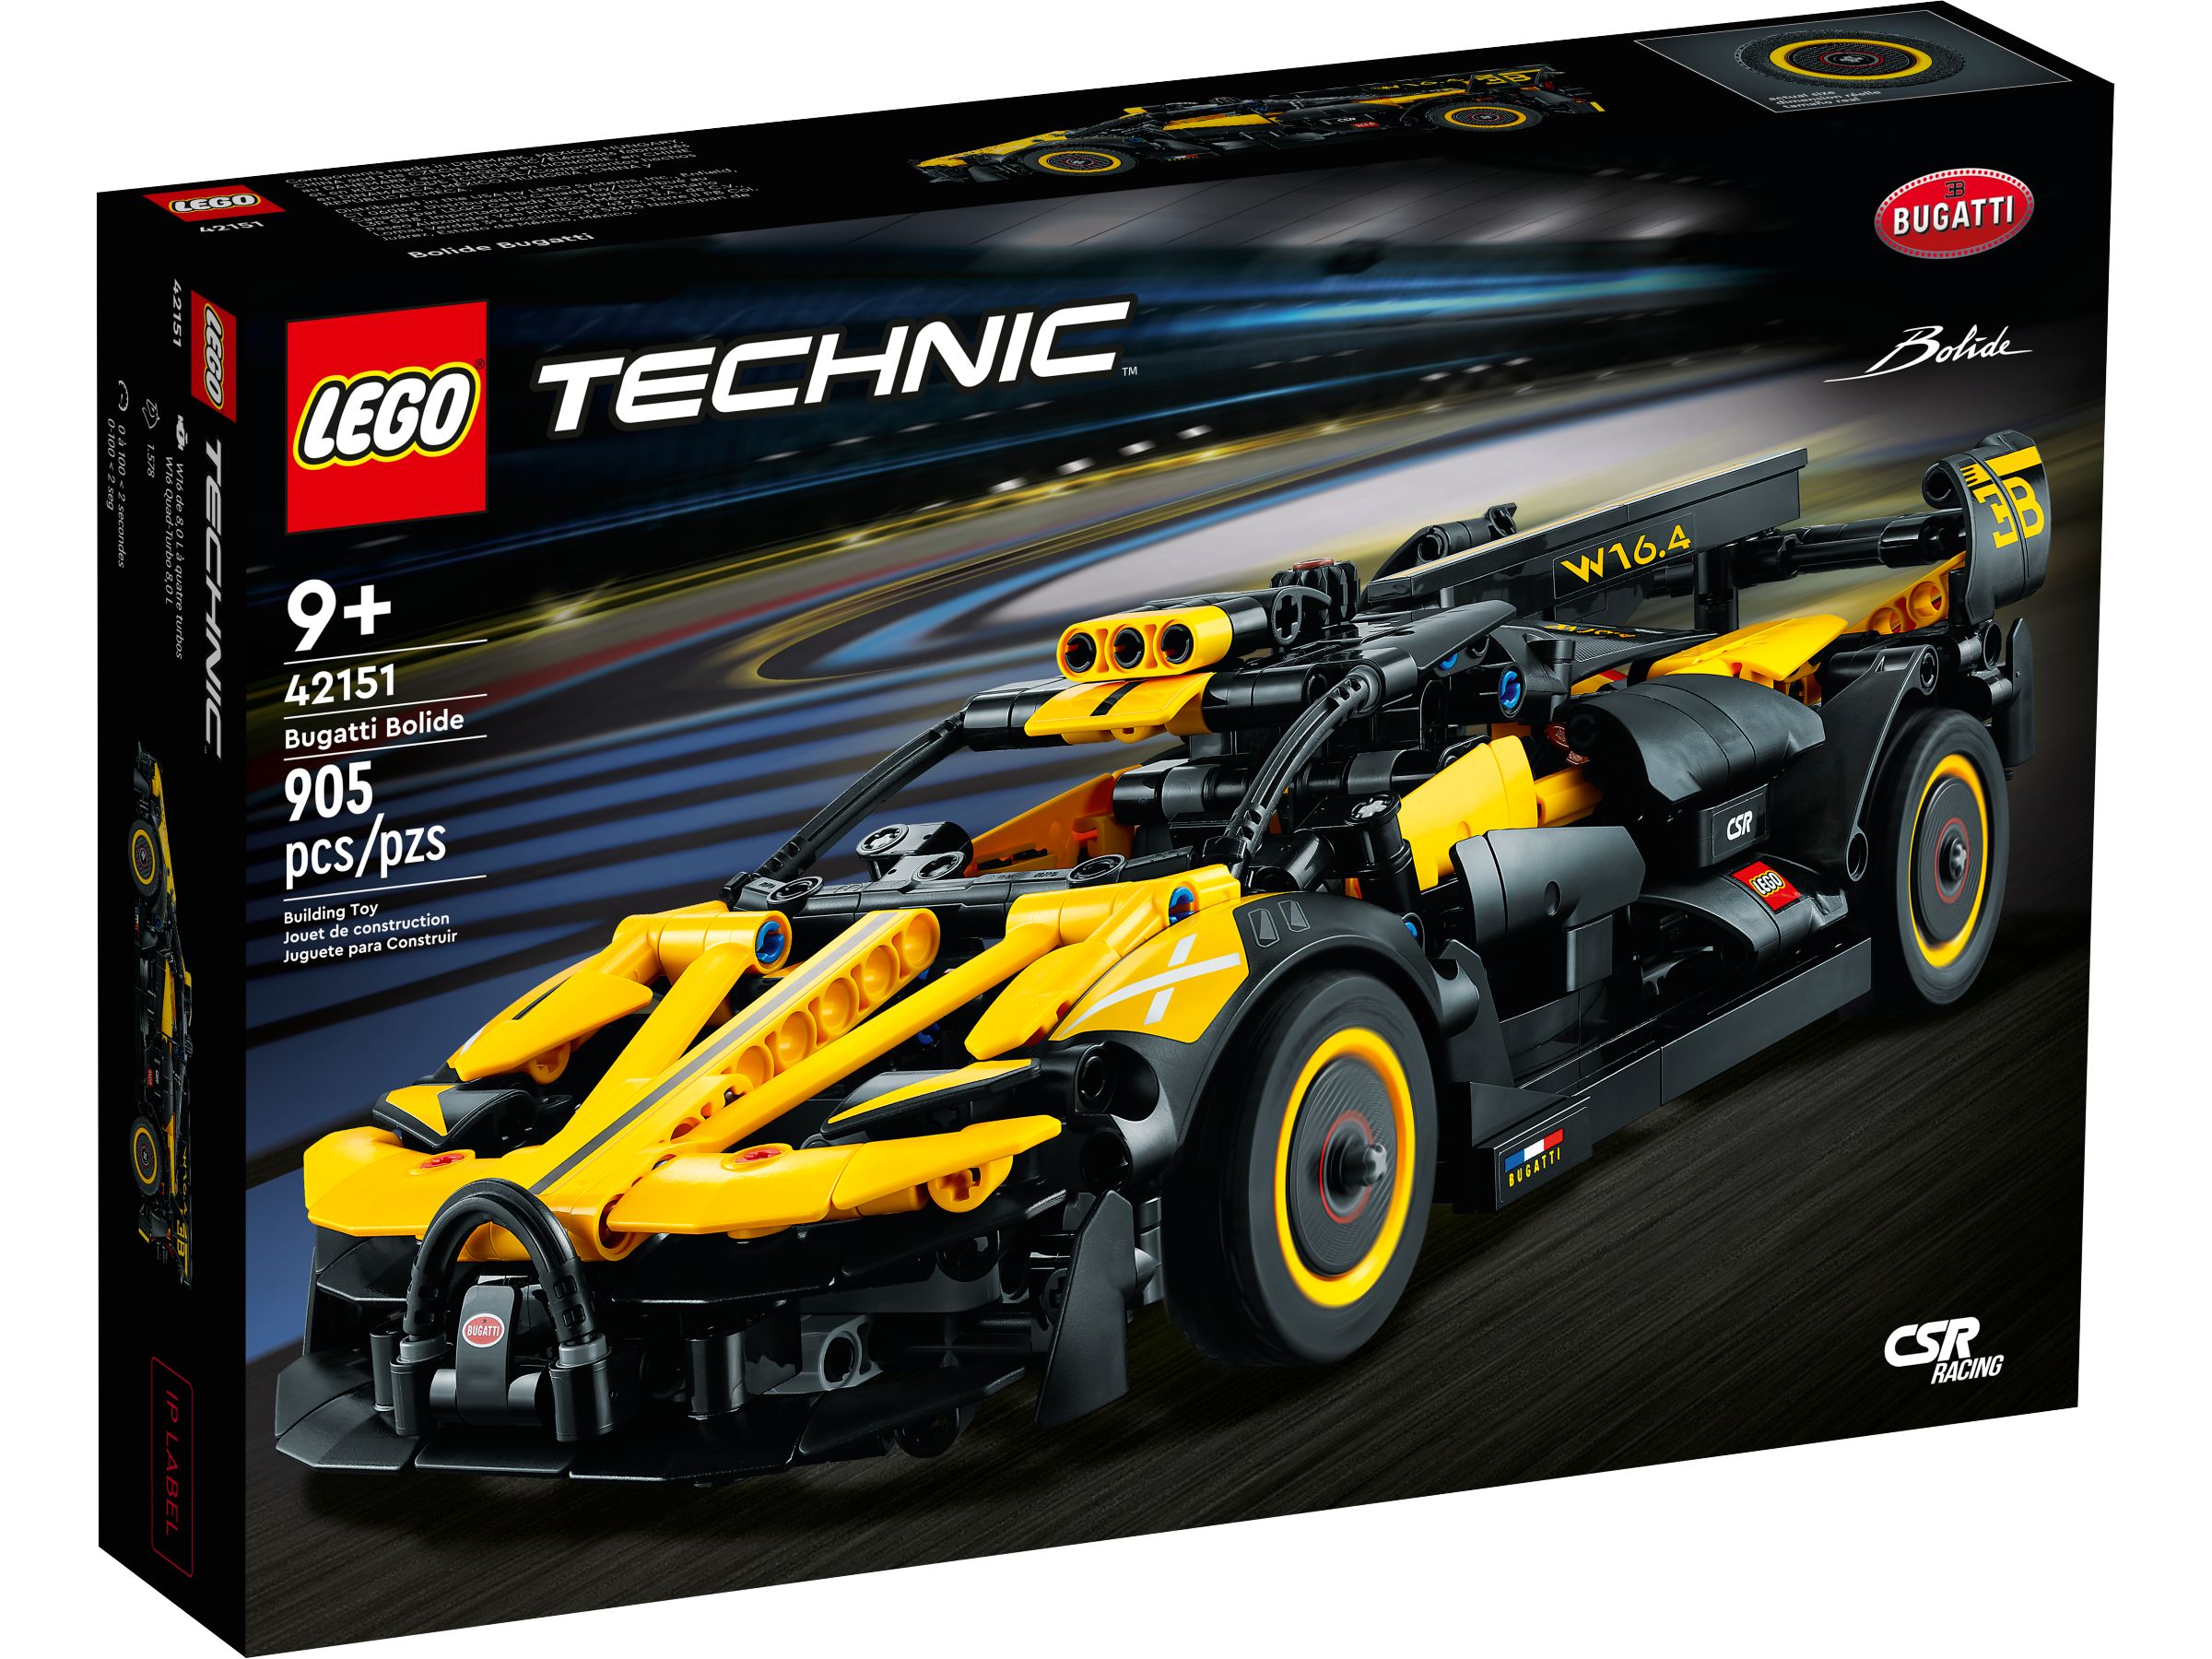 LEGO Technic 42151 Bugatti-Bolide LEGO_42151_alt1.jpg